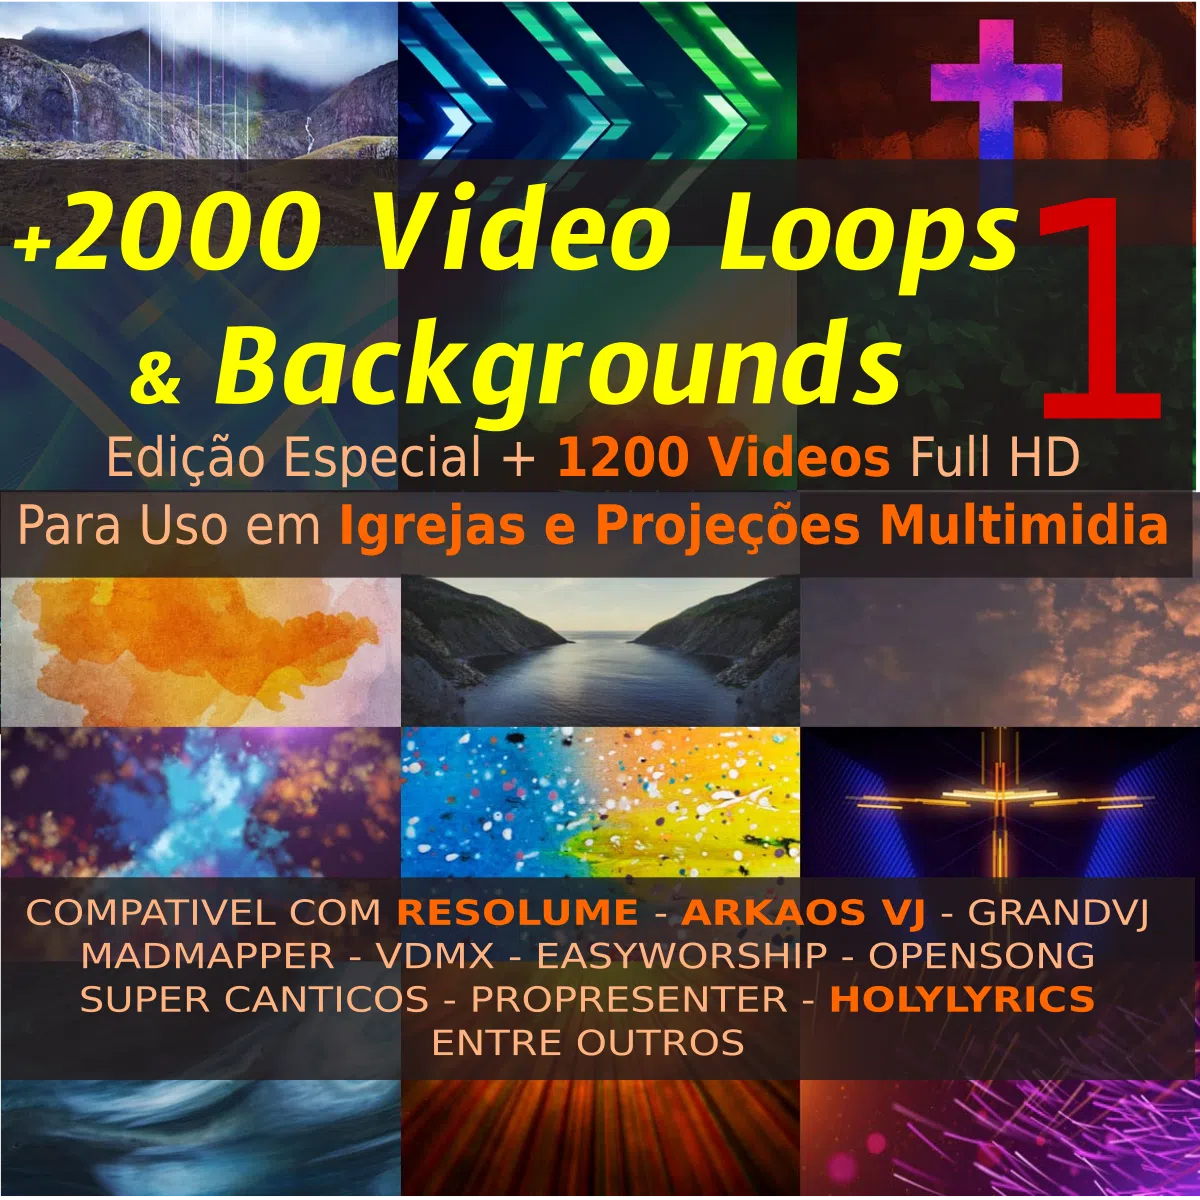 PACK +2000 Video Loops e Backgrounds Vol.1 - ESPECIAL IGREJAS MULTIMIDIA